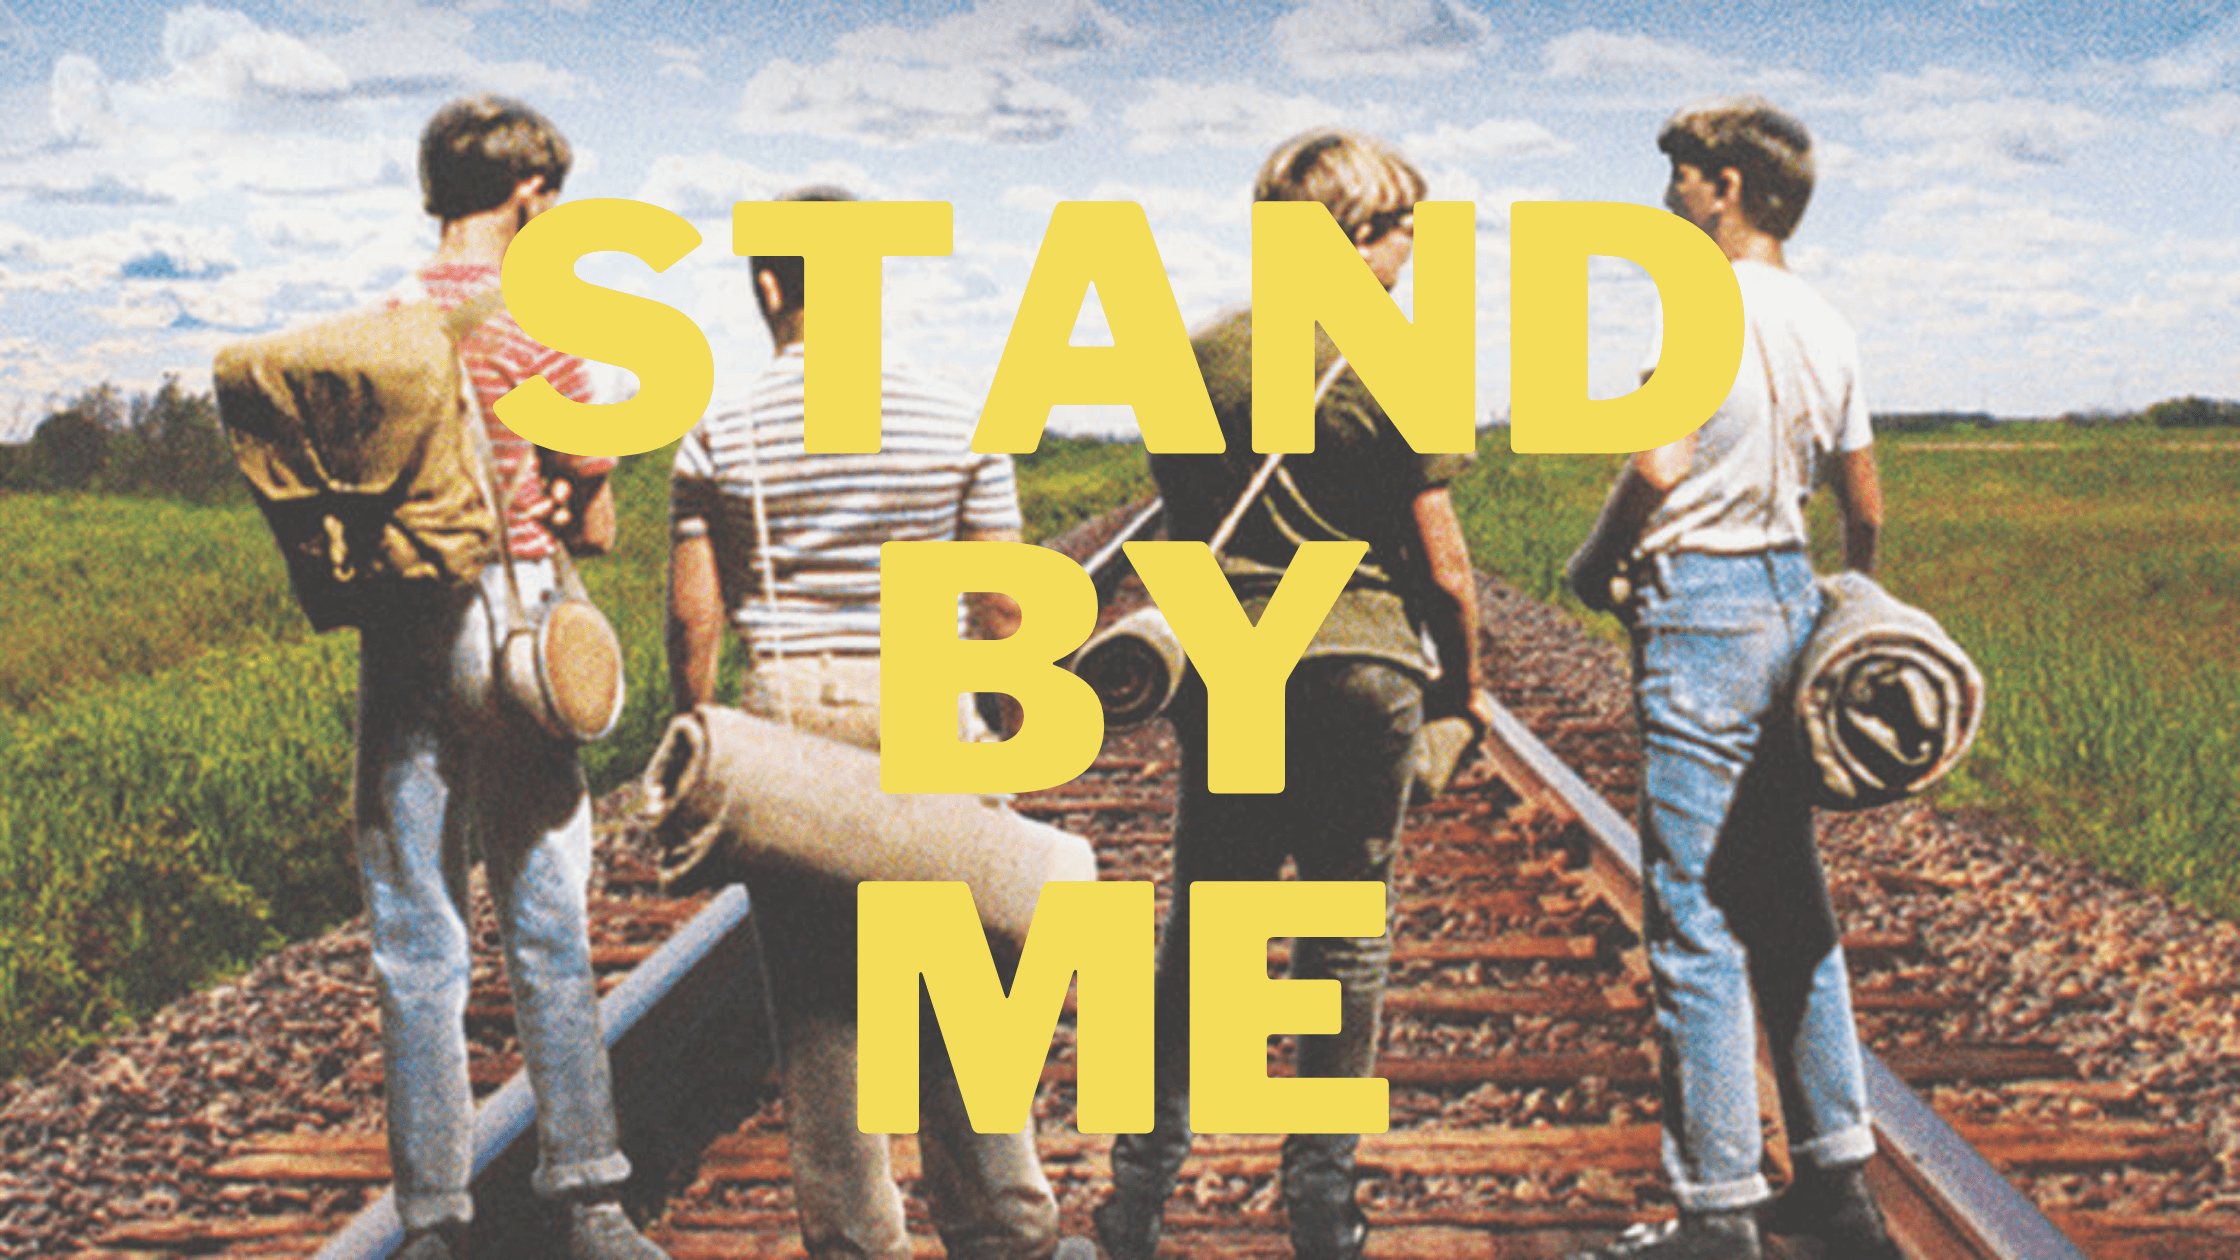 【聖地巡礼】映画『スタンド・バイ・ミー (Stand By Me)』ロケ地ツアー